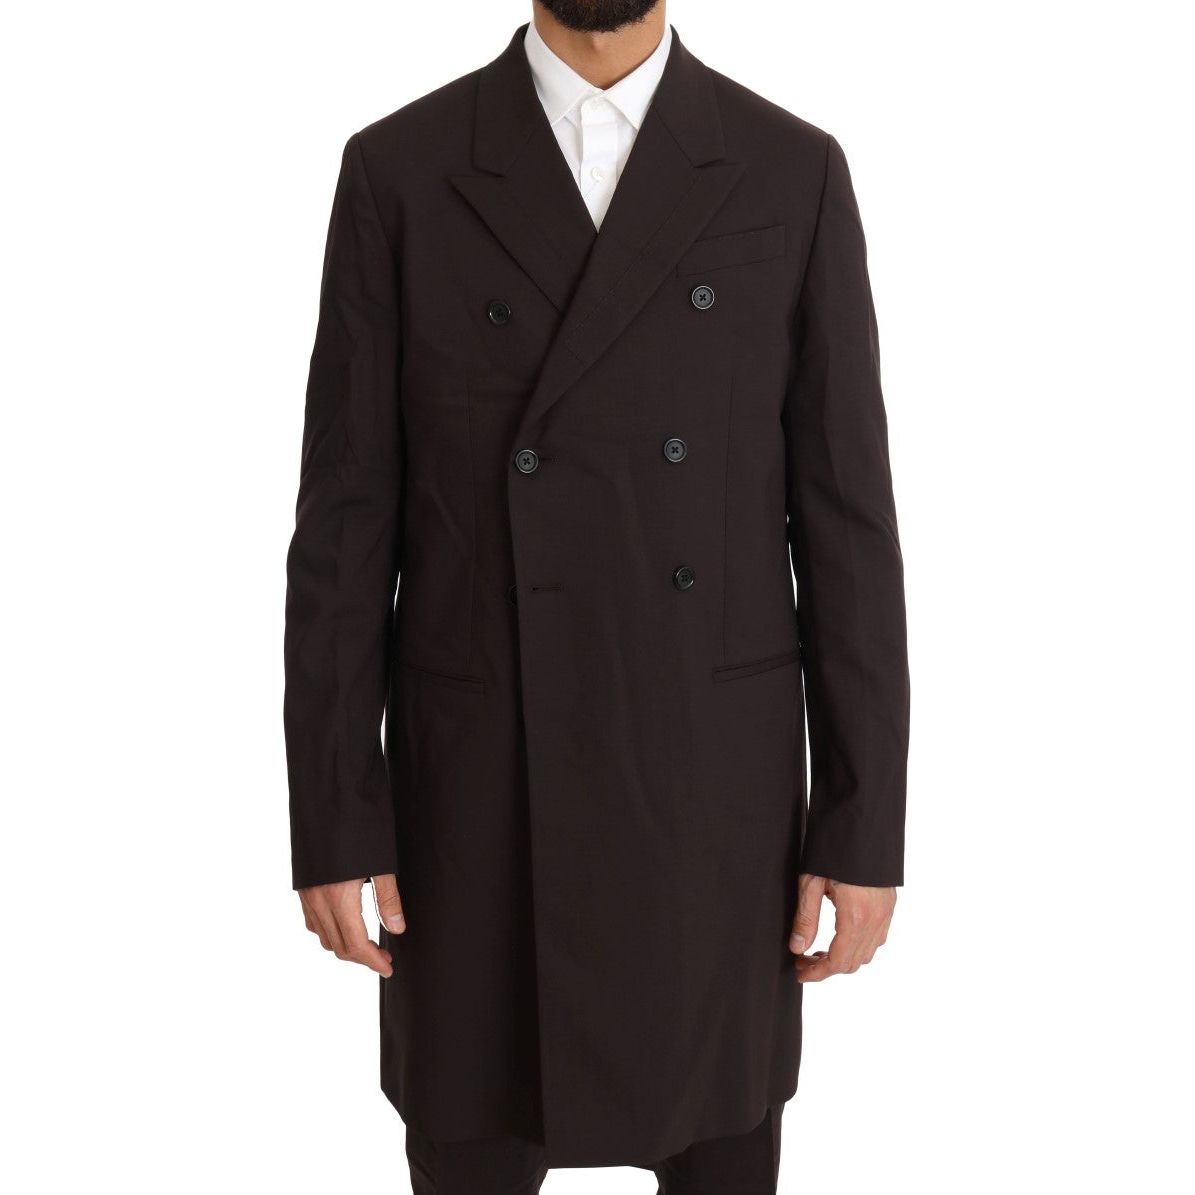 Dolce & Gabbana Elegant Bordeaux Double Breasted Suit bordeaux-wool-stretch-long-3-piece-suit Suit 464558-bordeaux-wool-stretch-long-3-piece-suit-3.jpg